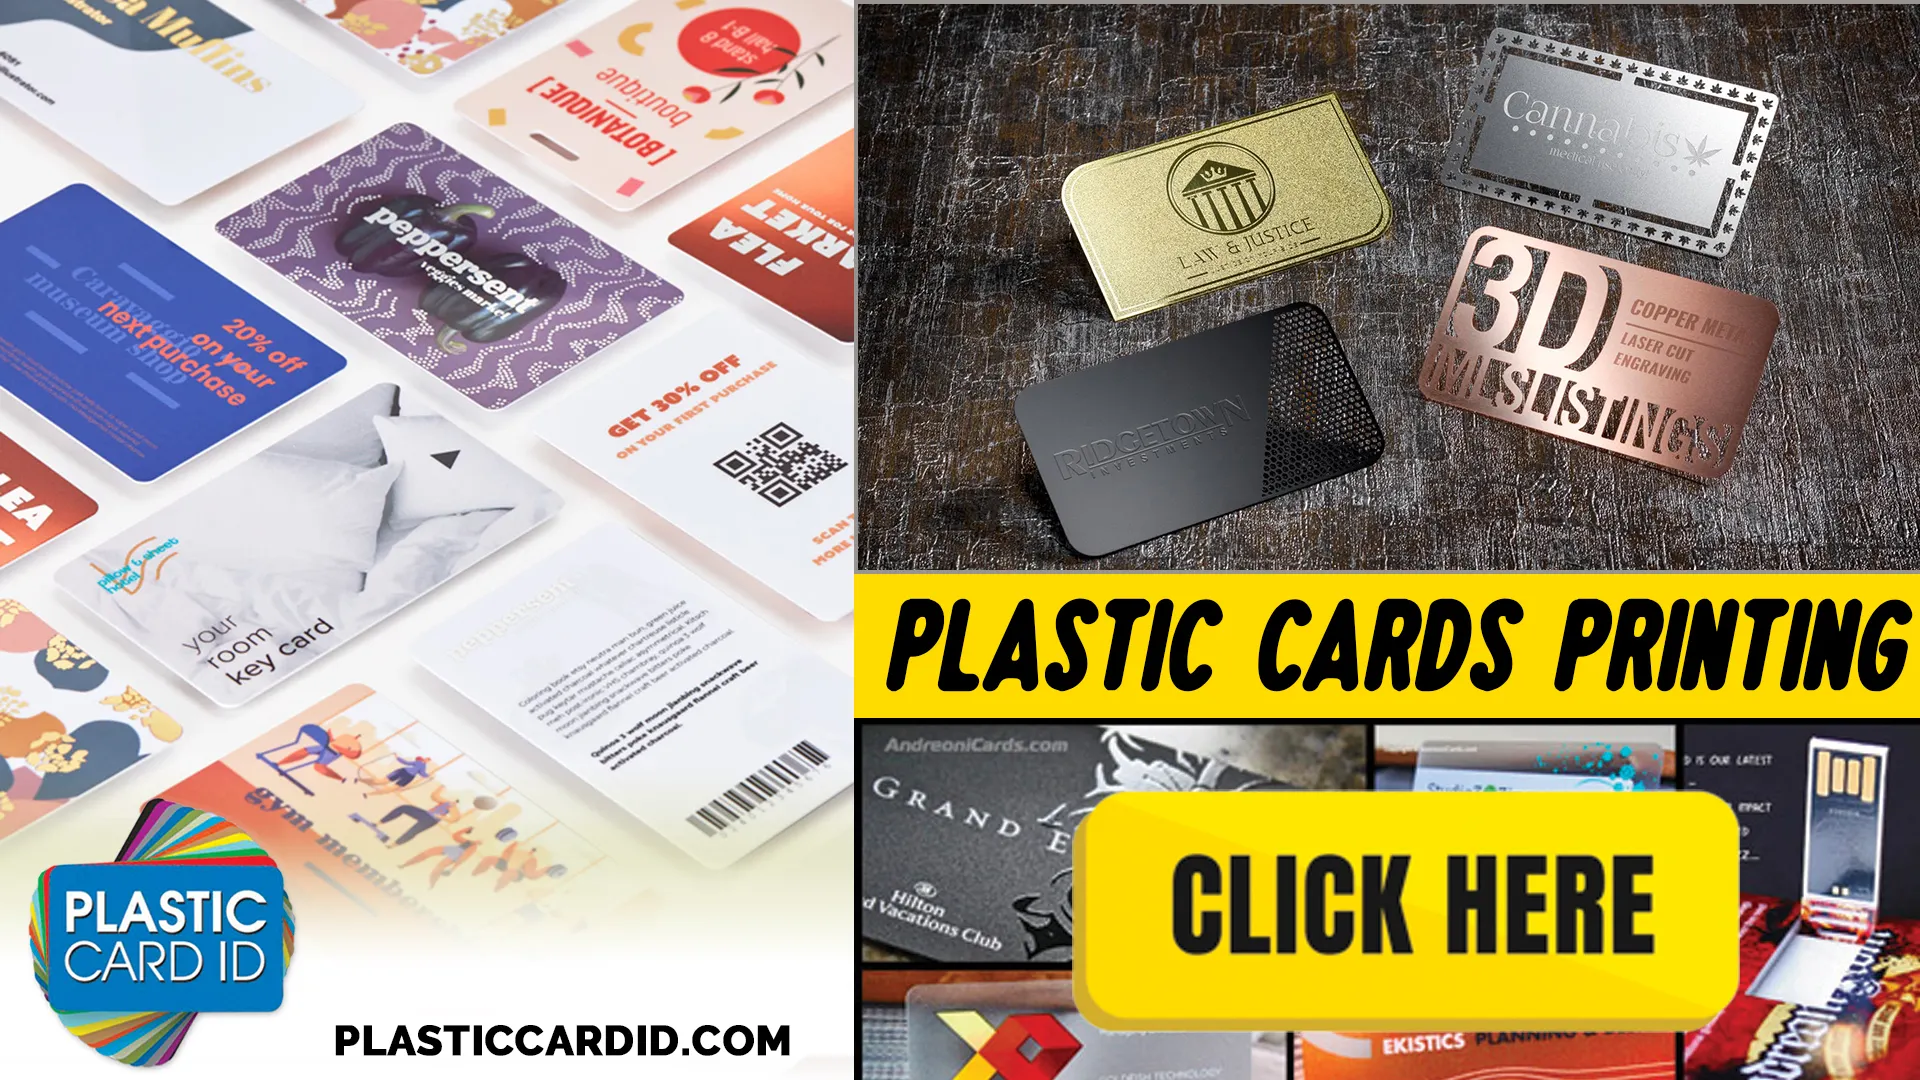 Superior Quality Materials for Premium Cards